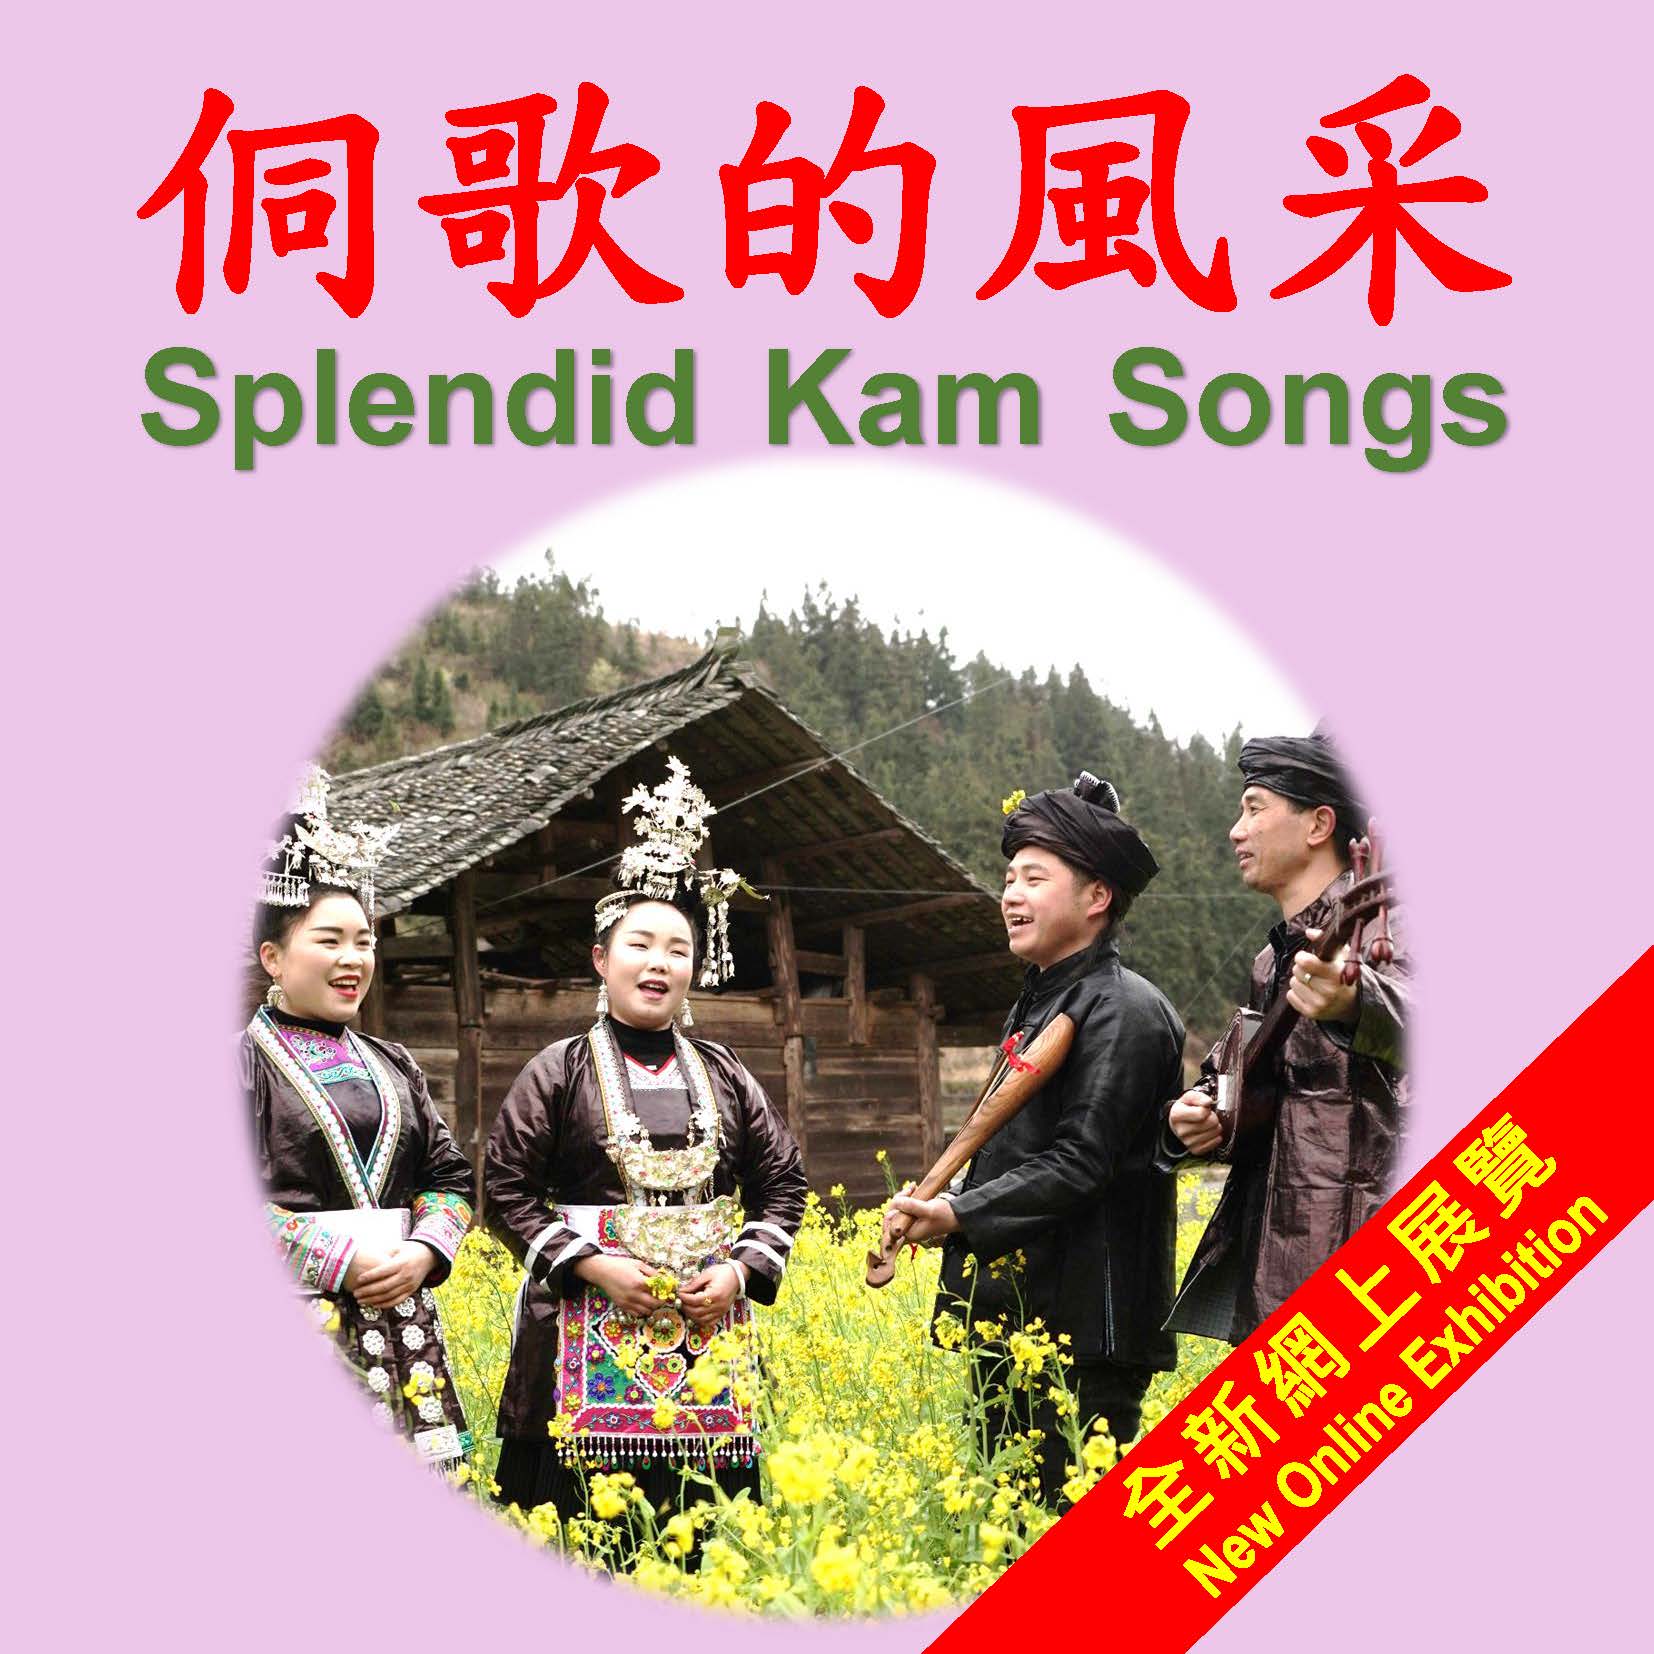 Music Exhibition - Splendid Kam Songs